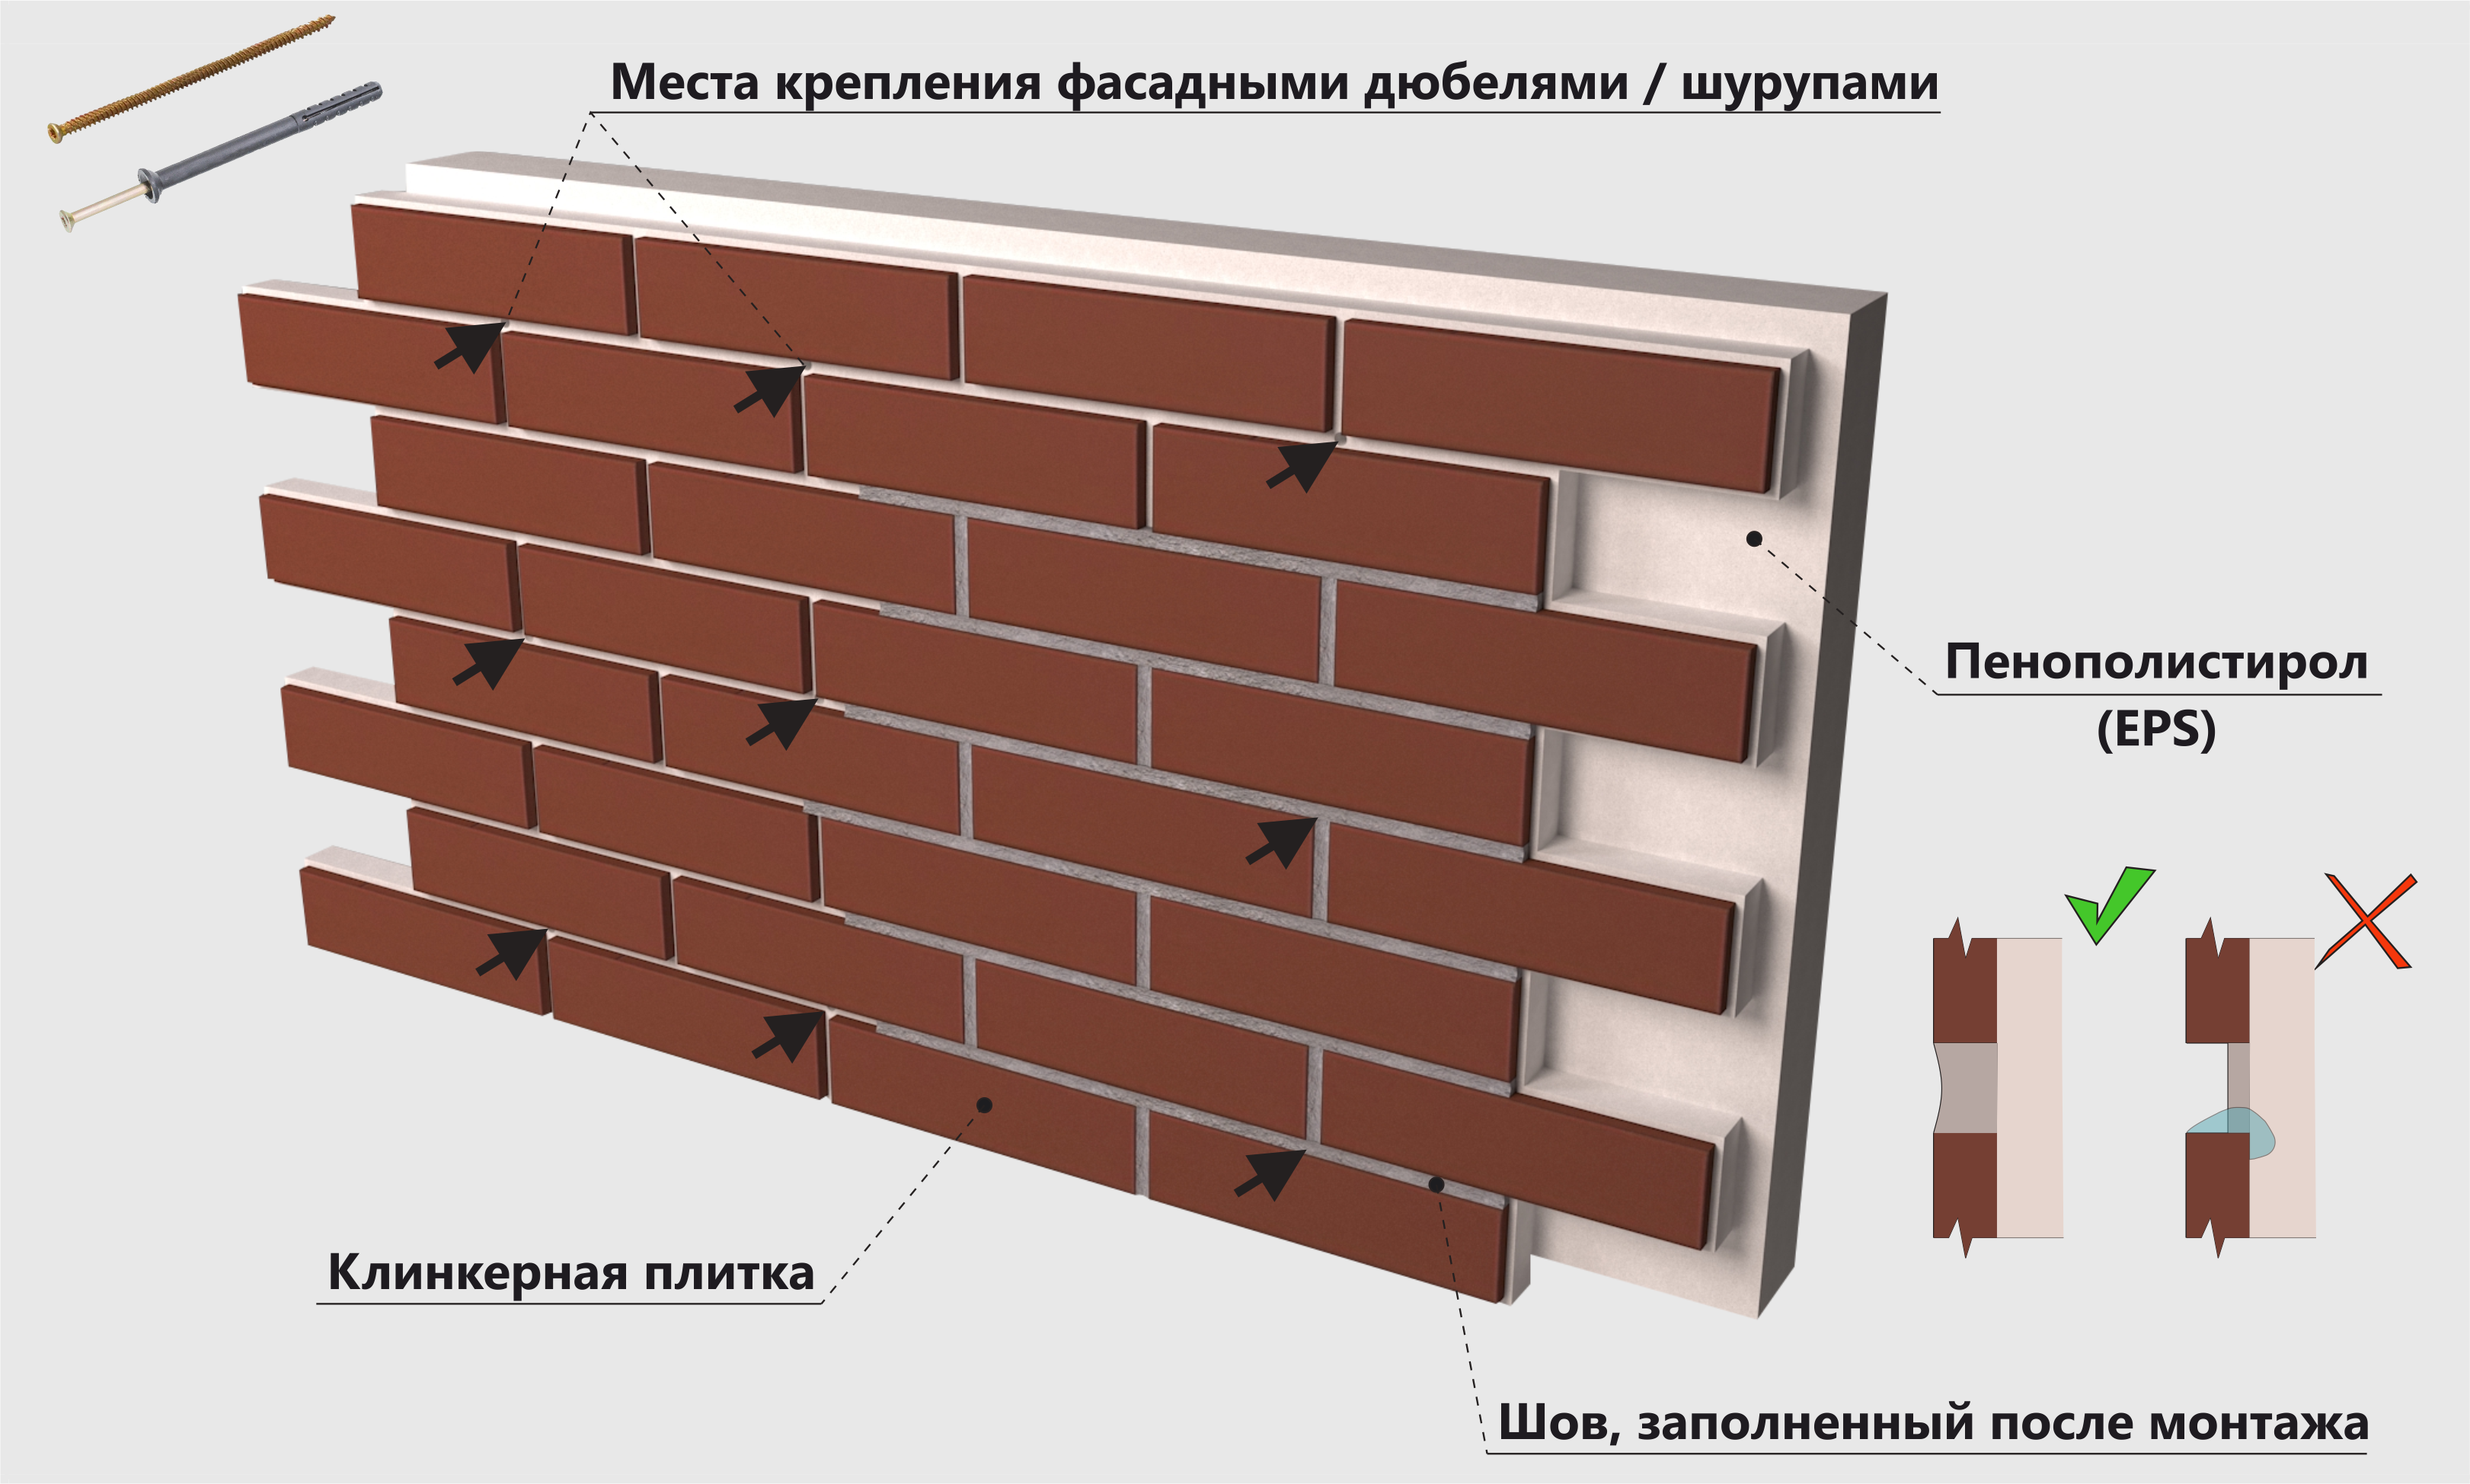 Клинкерные фасадные термопанели: производство и монтаж изделий с плиткой, инструкция и отзывы